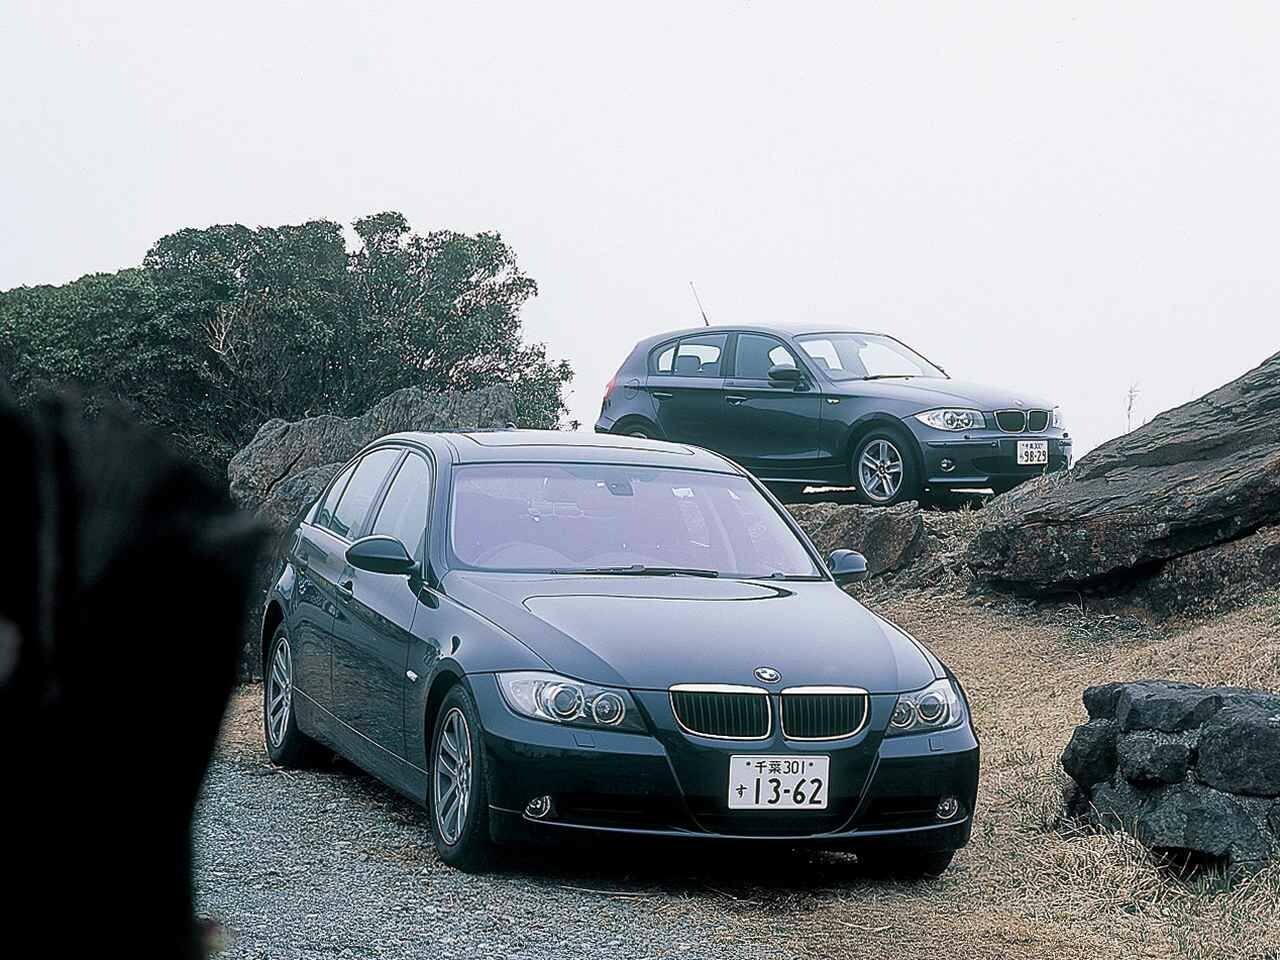 【ヒットの法則35】5代目E90型BMW 3シリーズは1シリーズがあるからこそ大幅な進化を遂げることができた